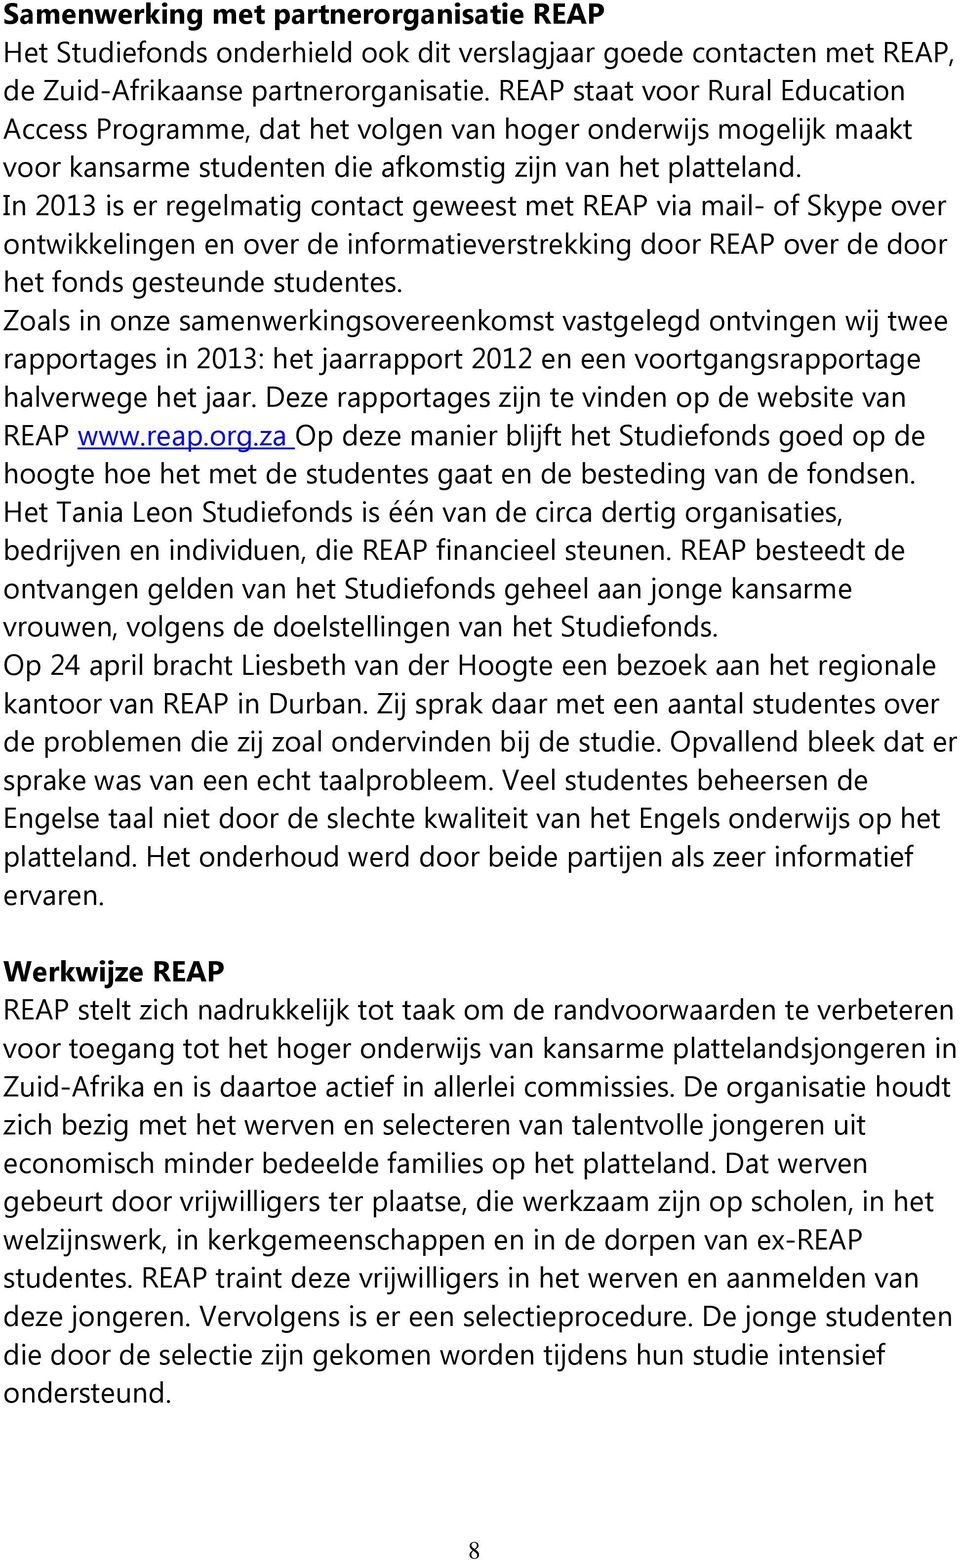 In 2013 is er regelmatig contact geweest met REAP via mail- of Skype over ontwikkelingen en over de informatieverstrekking door REAP over de door het fonds gesteunde studentes.